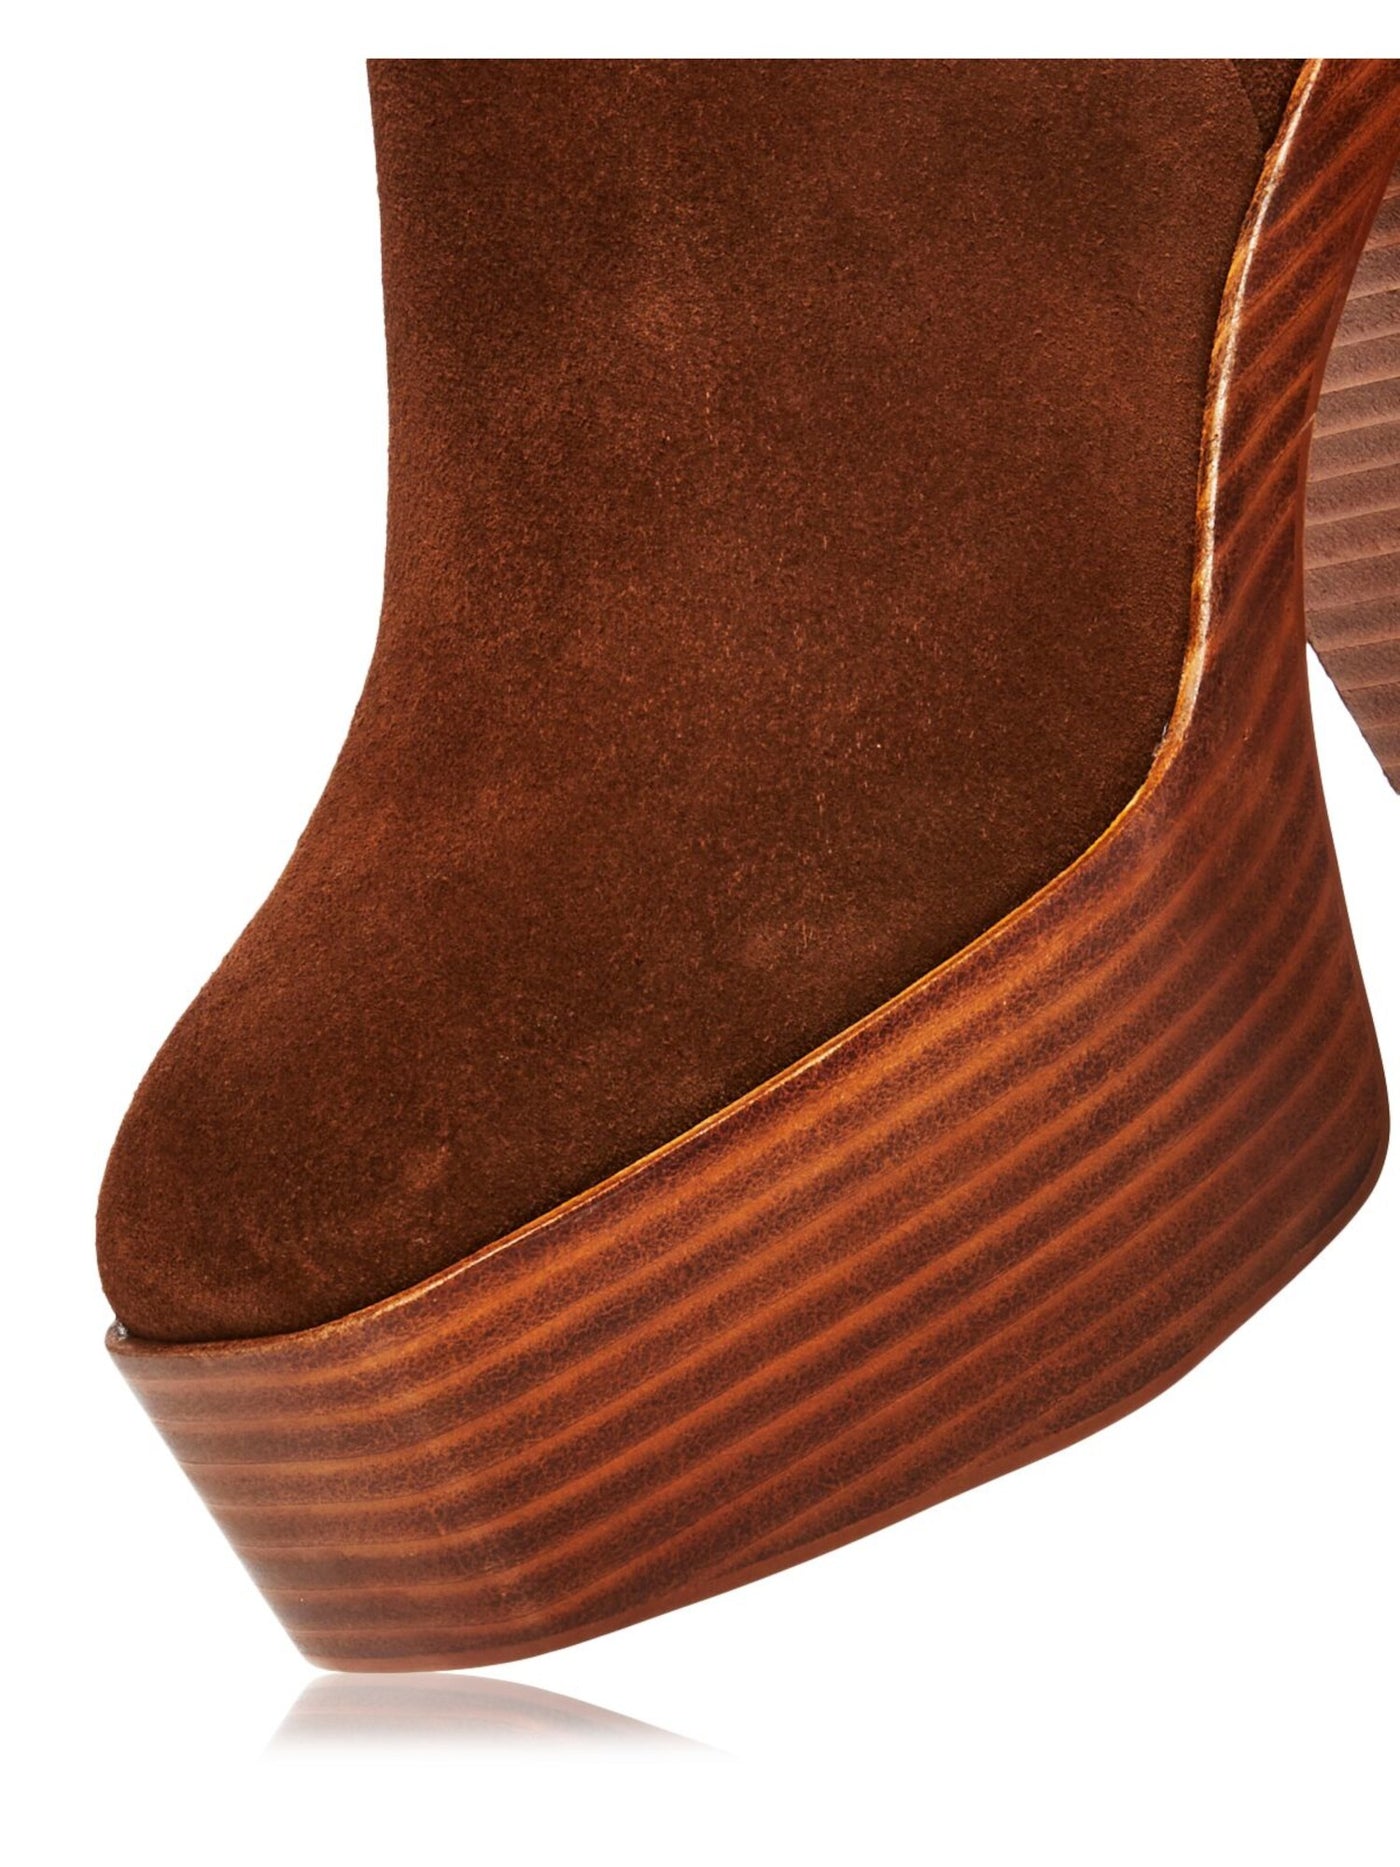 AQUA Womens Brown 2" Platform Comfort Maya Square Toe Stacked Heel Zip-Up Leather Booties M